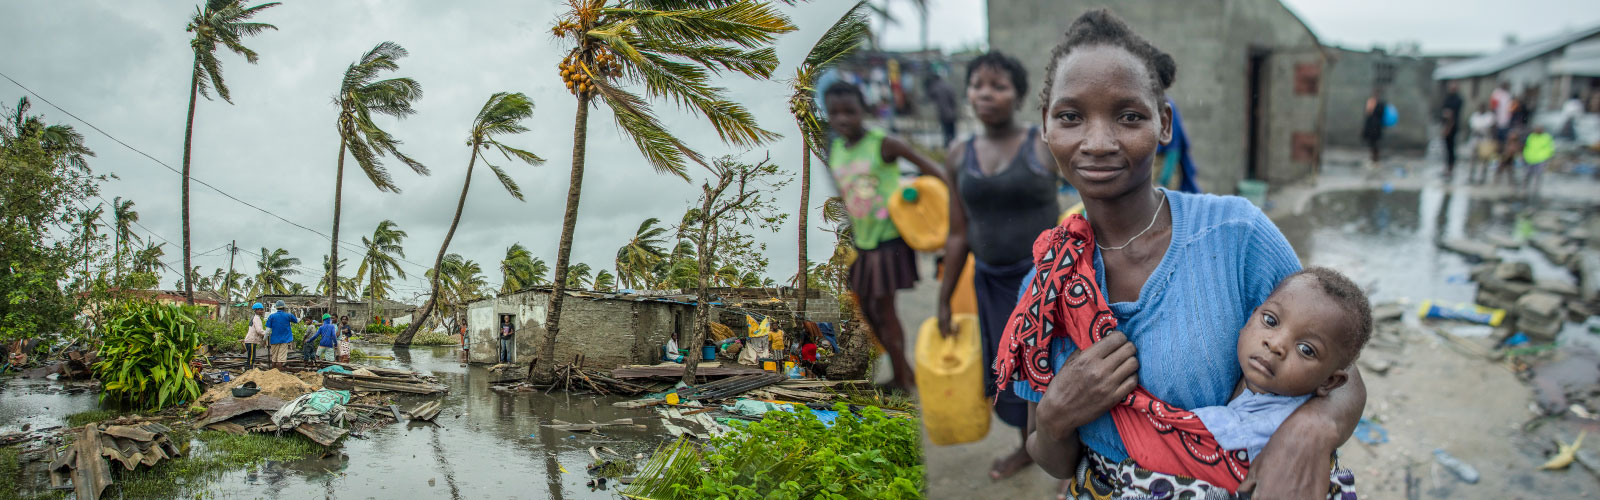 Hilfe für Menschen in Mosambik - jetzt online spenden!